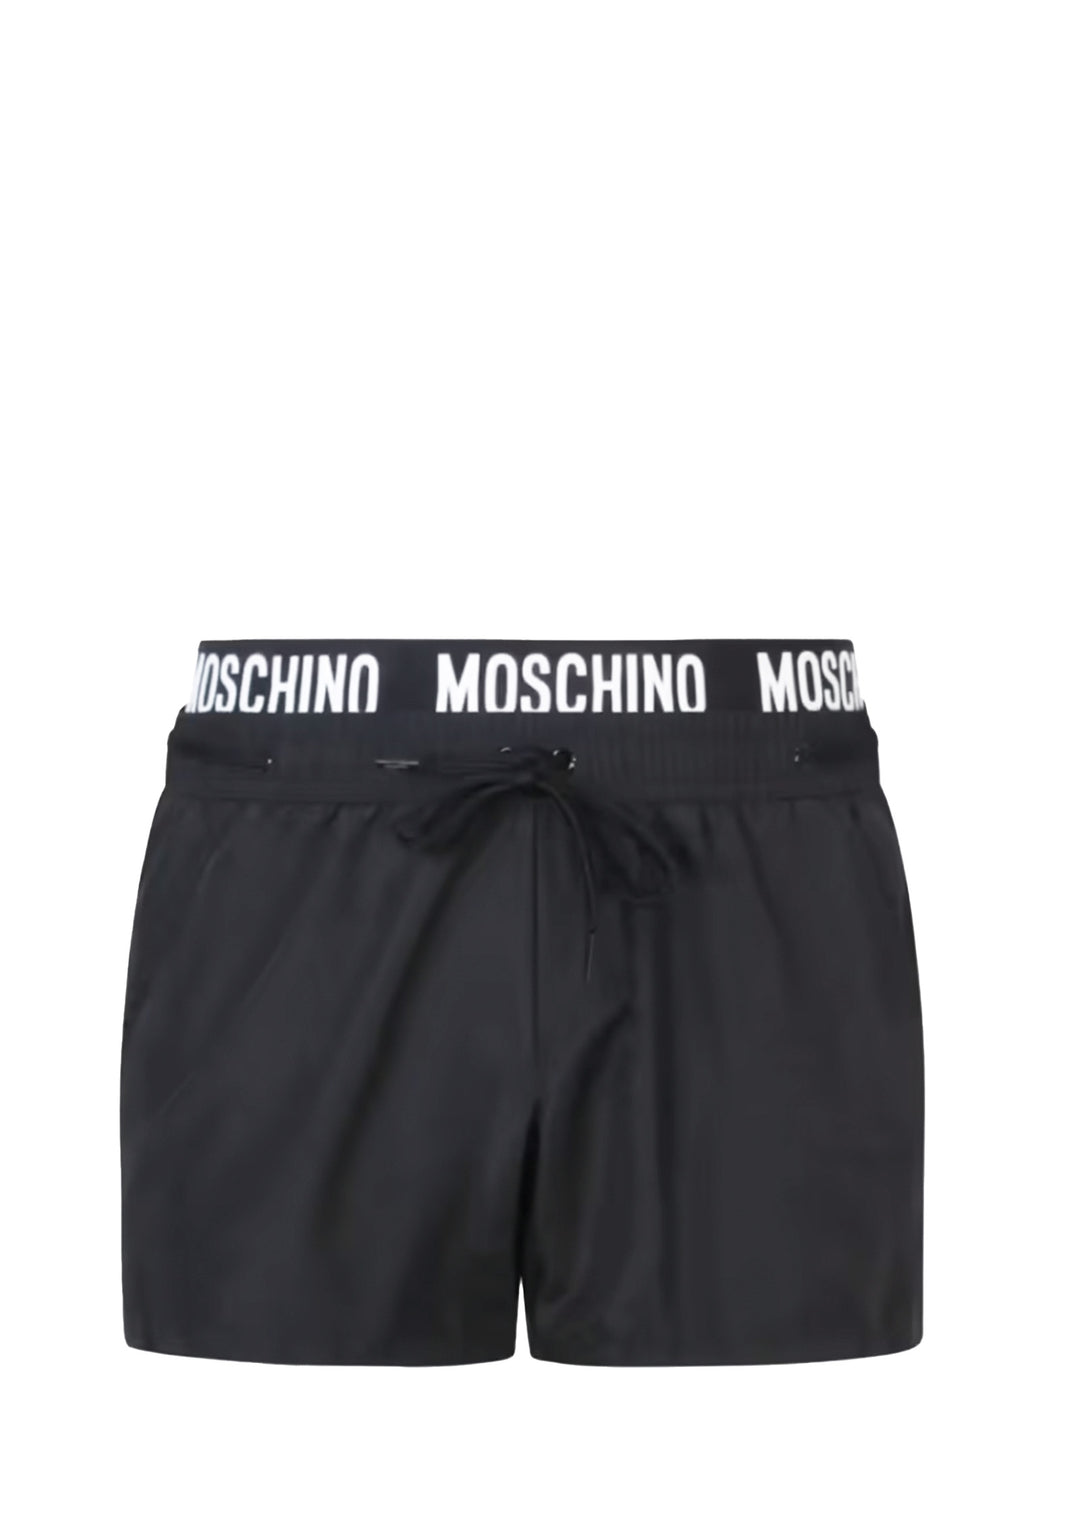 COSTUME SHORTS Nero Moschino